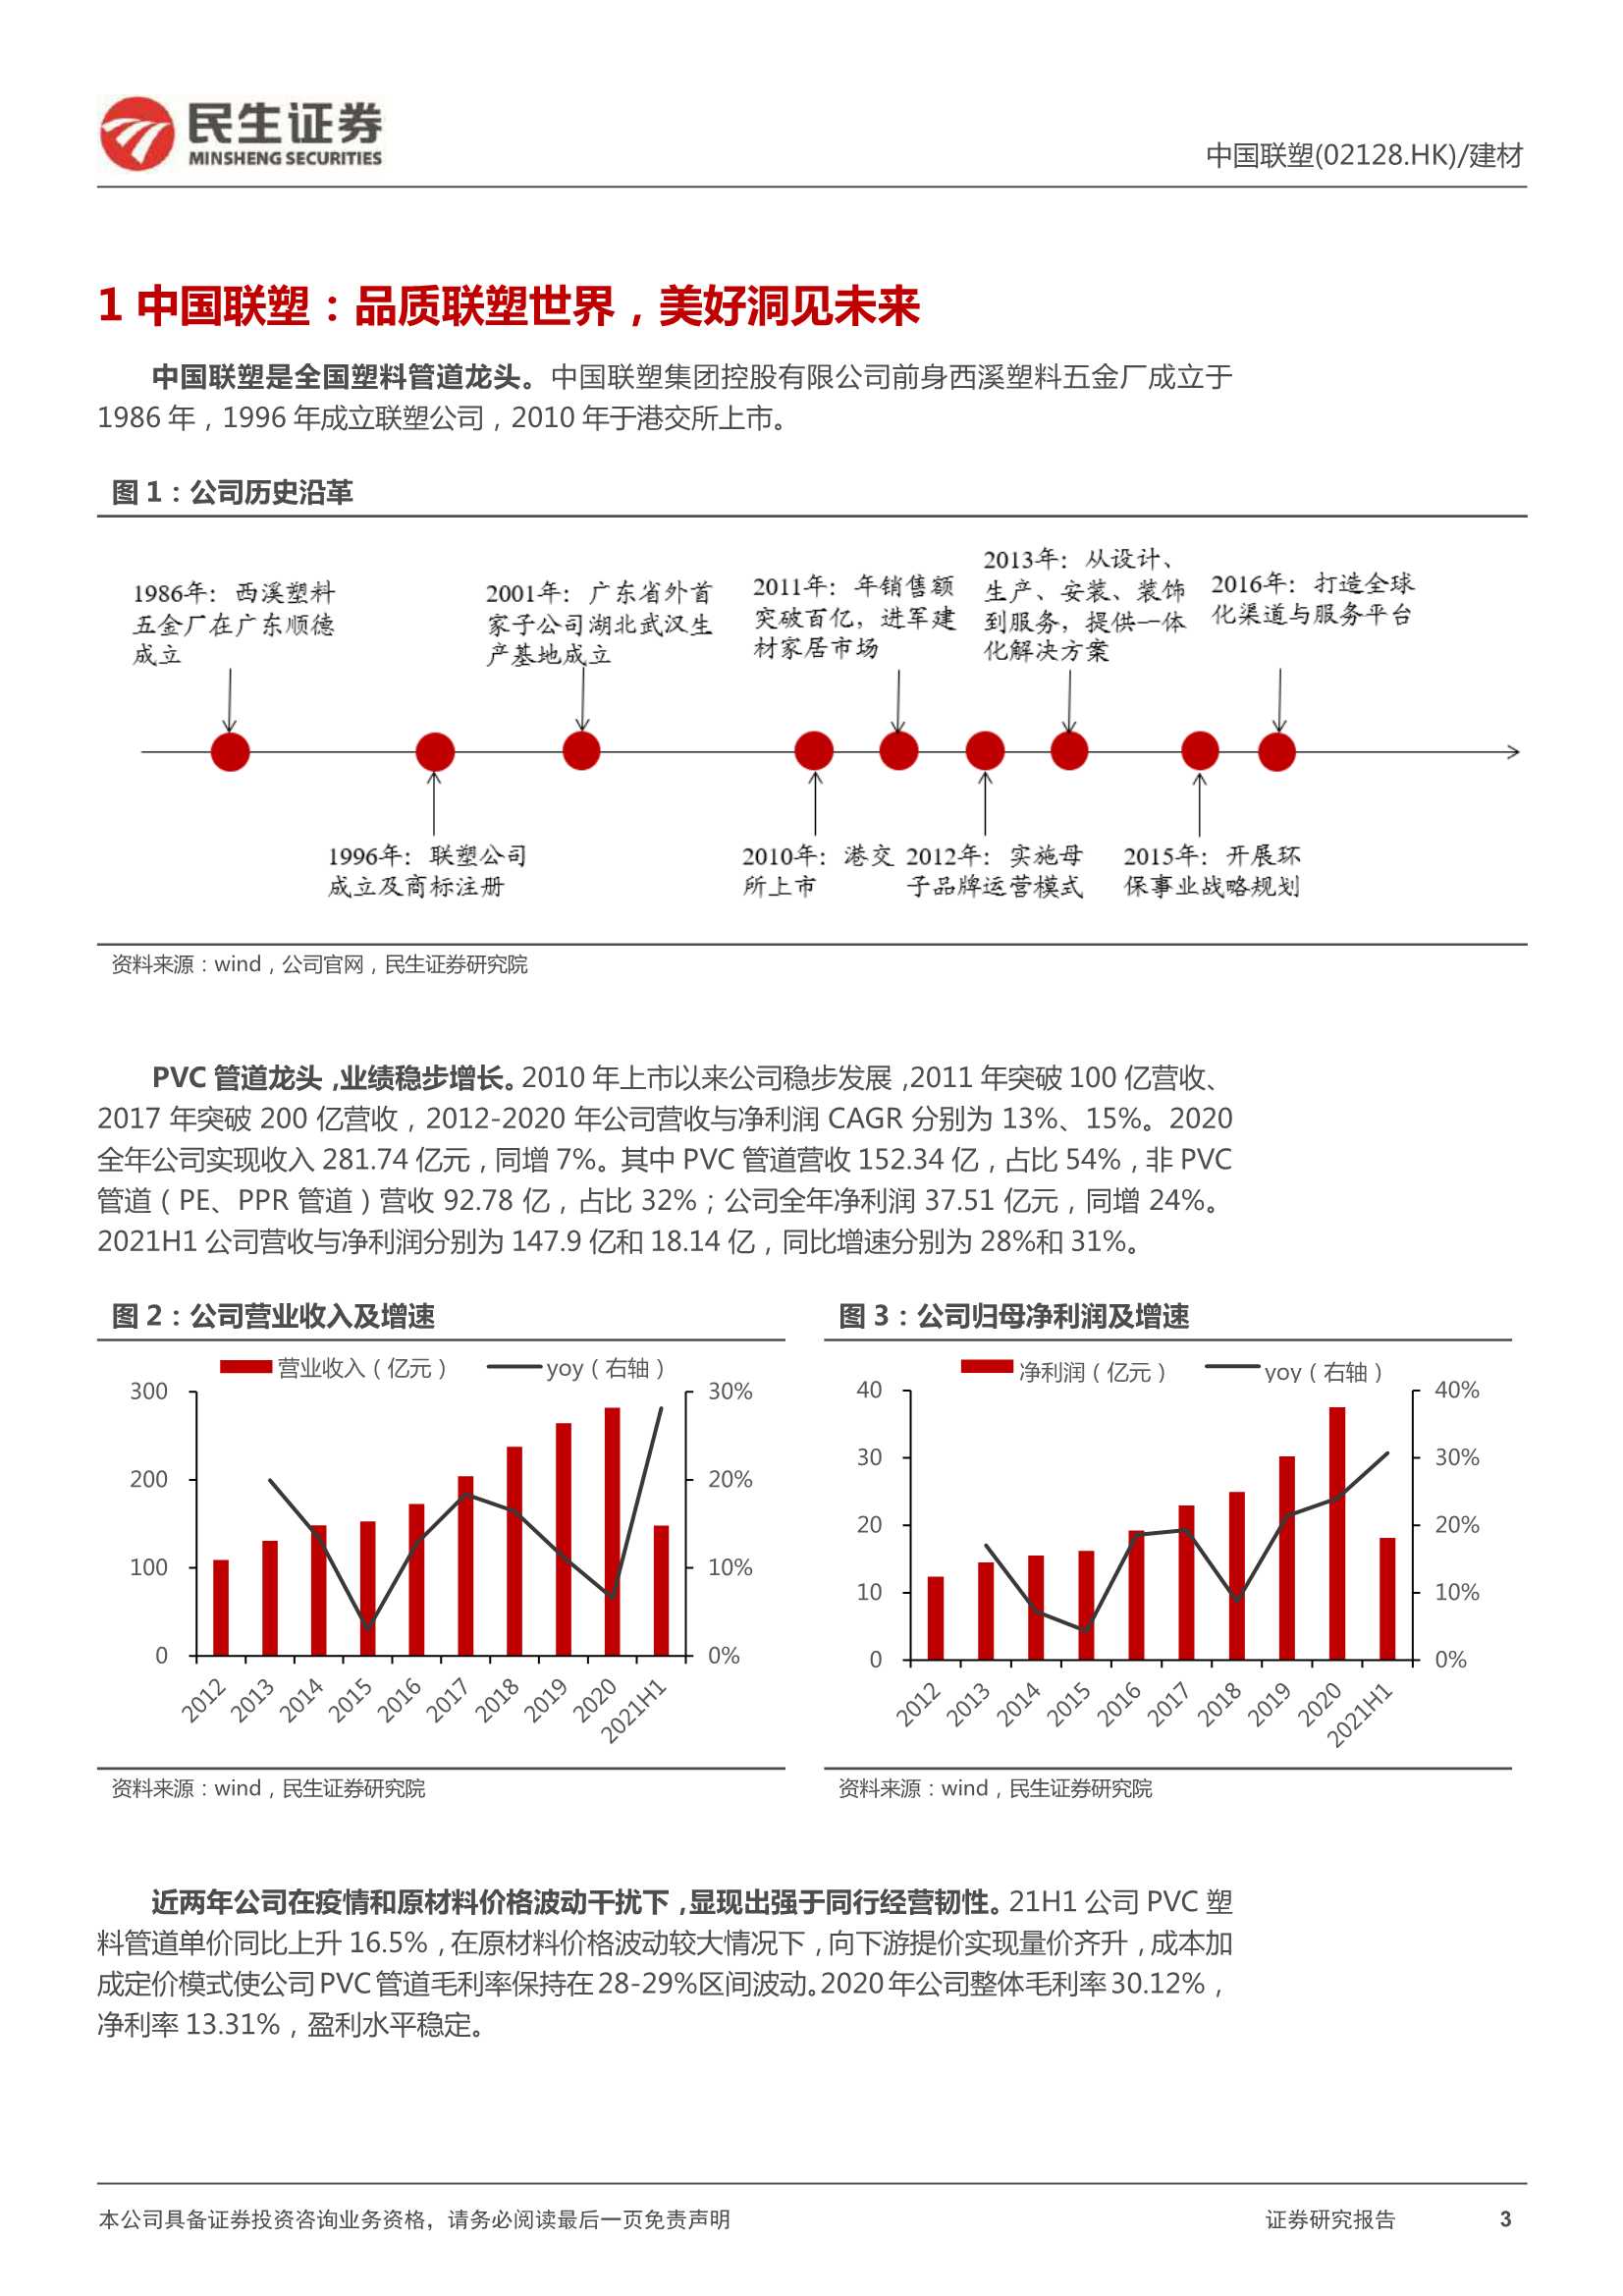 民生证券-中国联塑-2128.HK-深度报告：低估值塑管龙头，率先受益管廊投资加码-20220107-20页